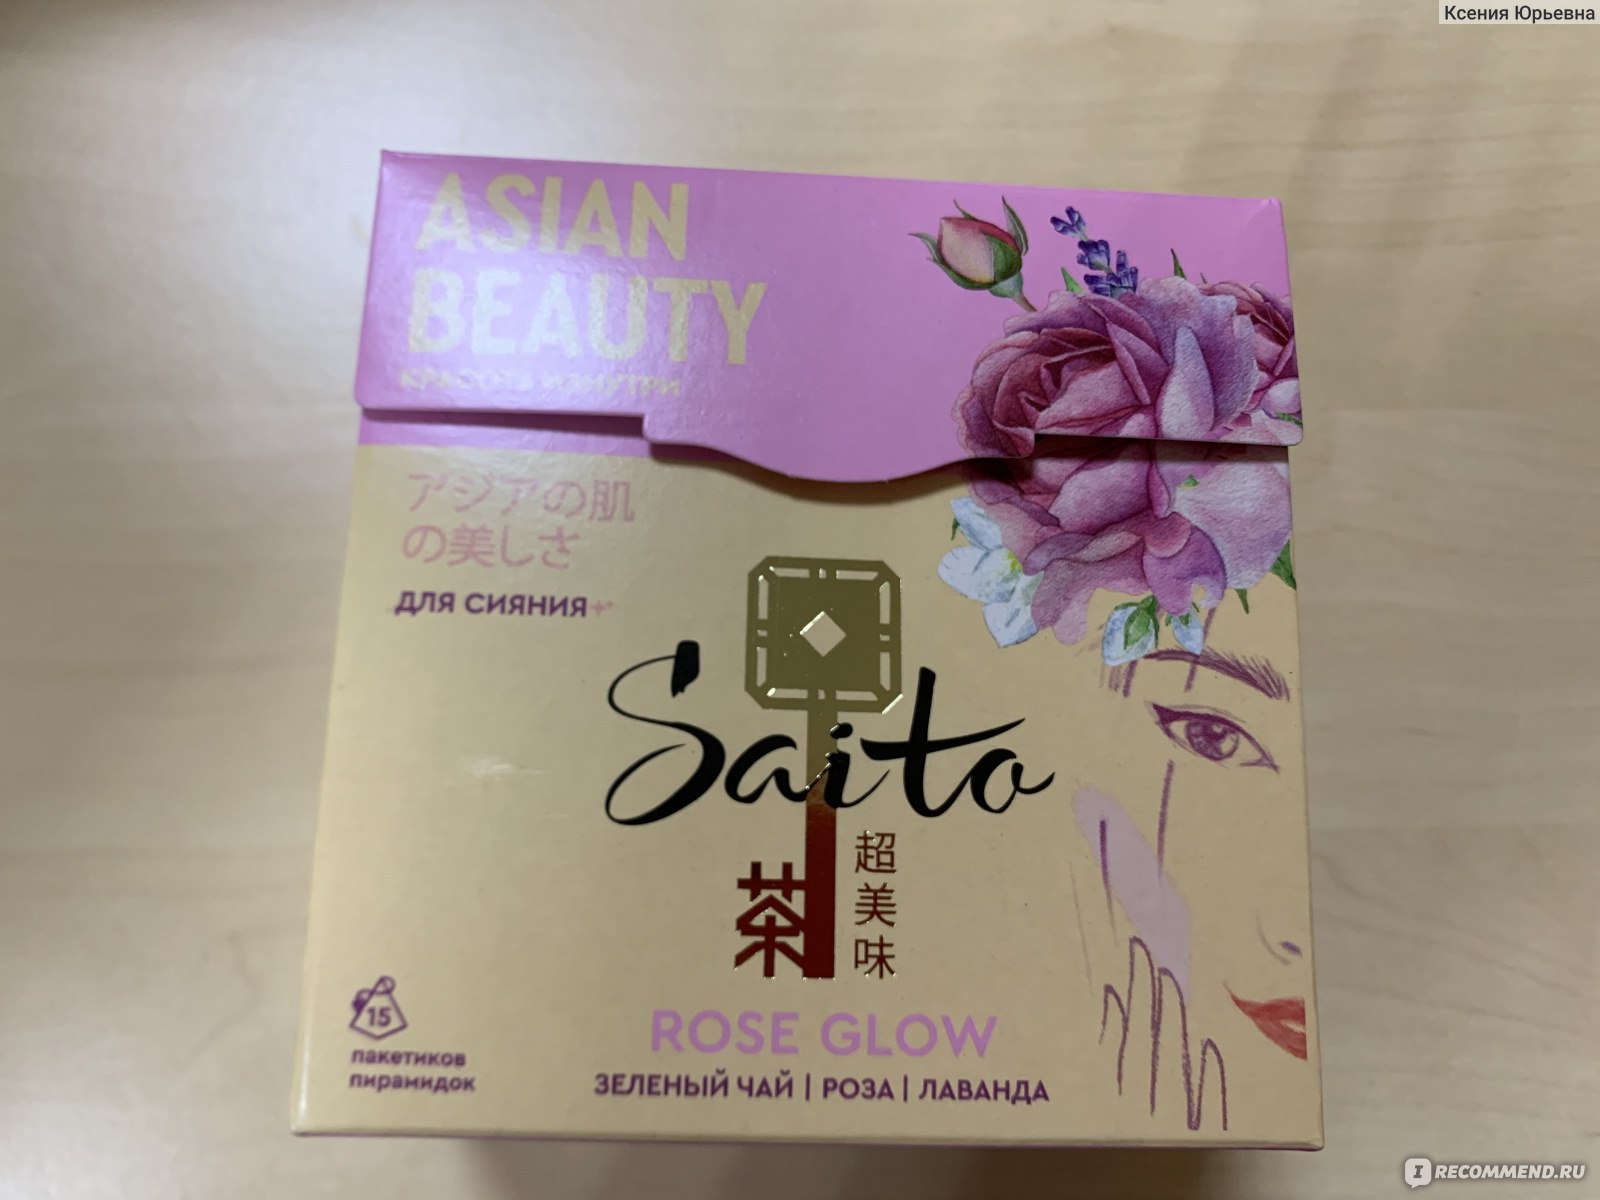 Asia цены. Чай Saito Asian Beauty. Чай Saito Rose Glow.